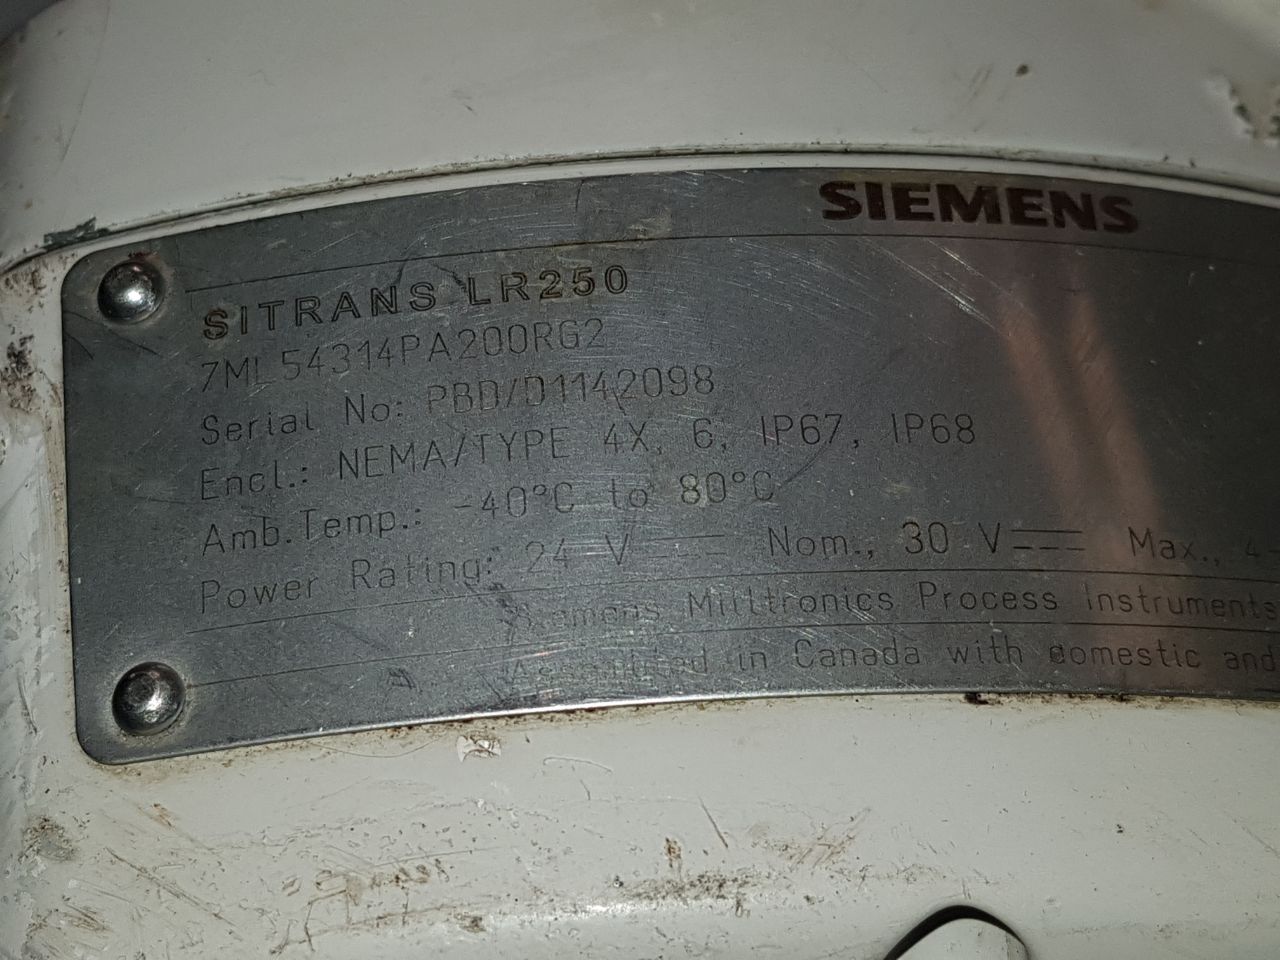 Siemens Sitrans Lr250 Radar Level Sensor Transmitter